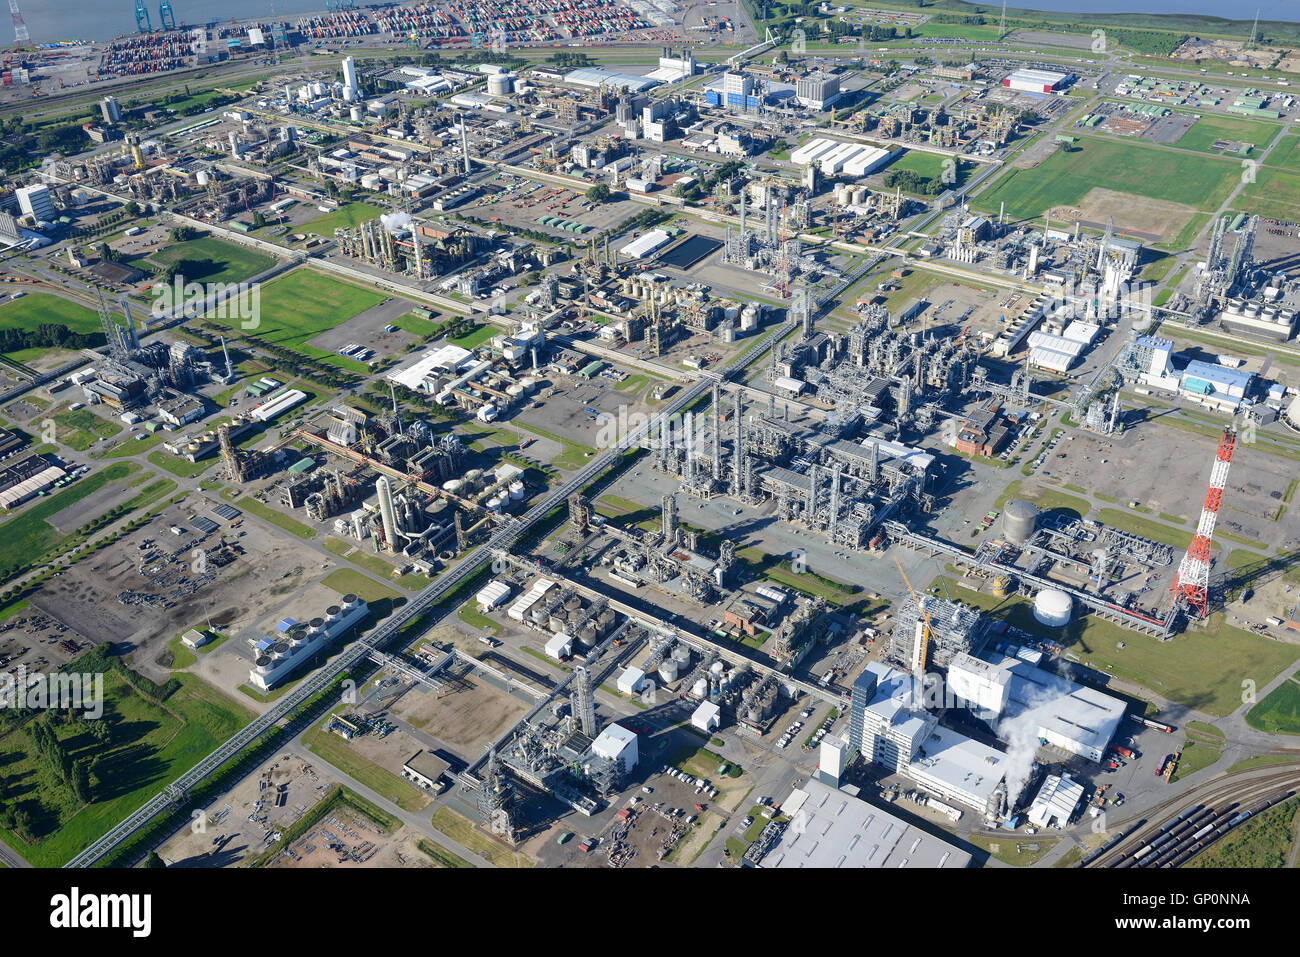 LUFTAUFNAHME. Chemieproduktionsstandort der BASF Antwerpen. Antwerp Harbour, Flämische Region, Belgien. Stockfoto